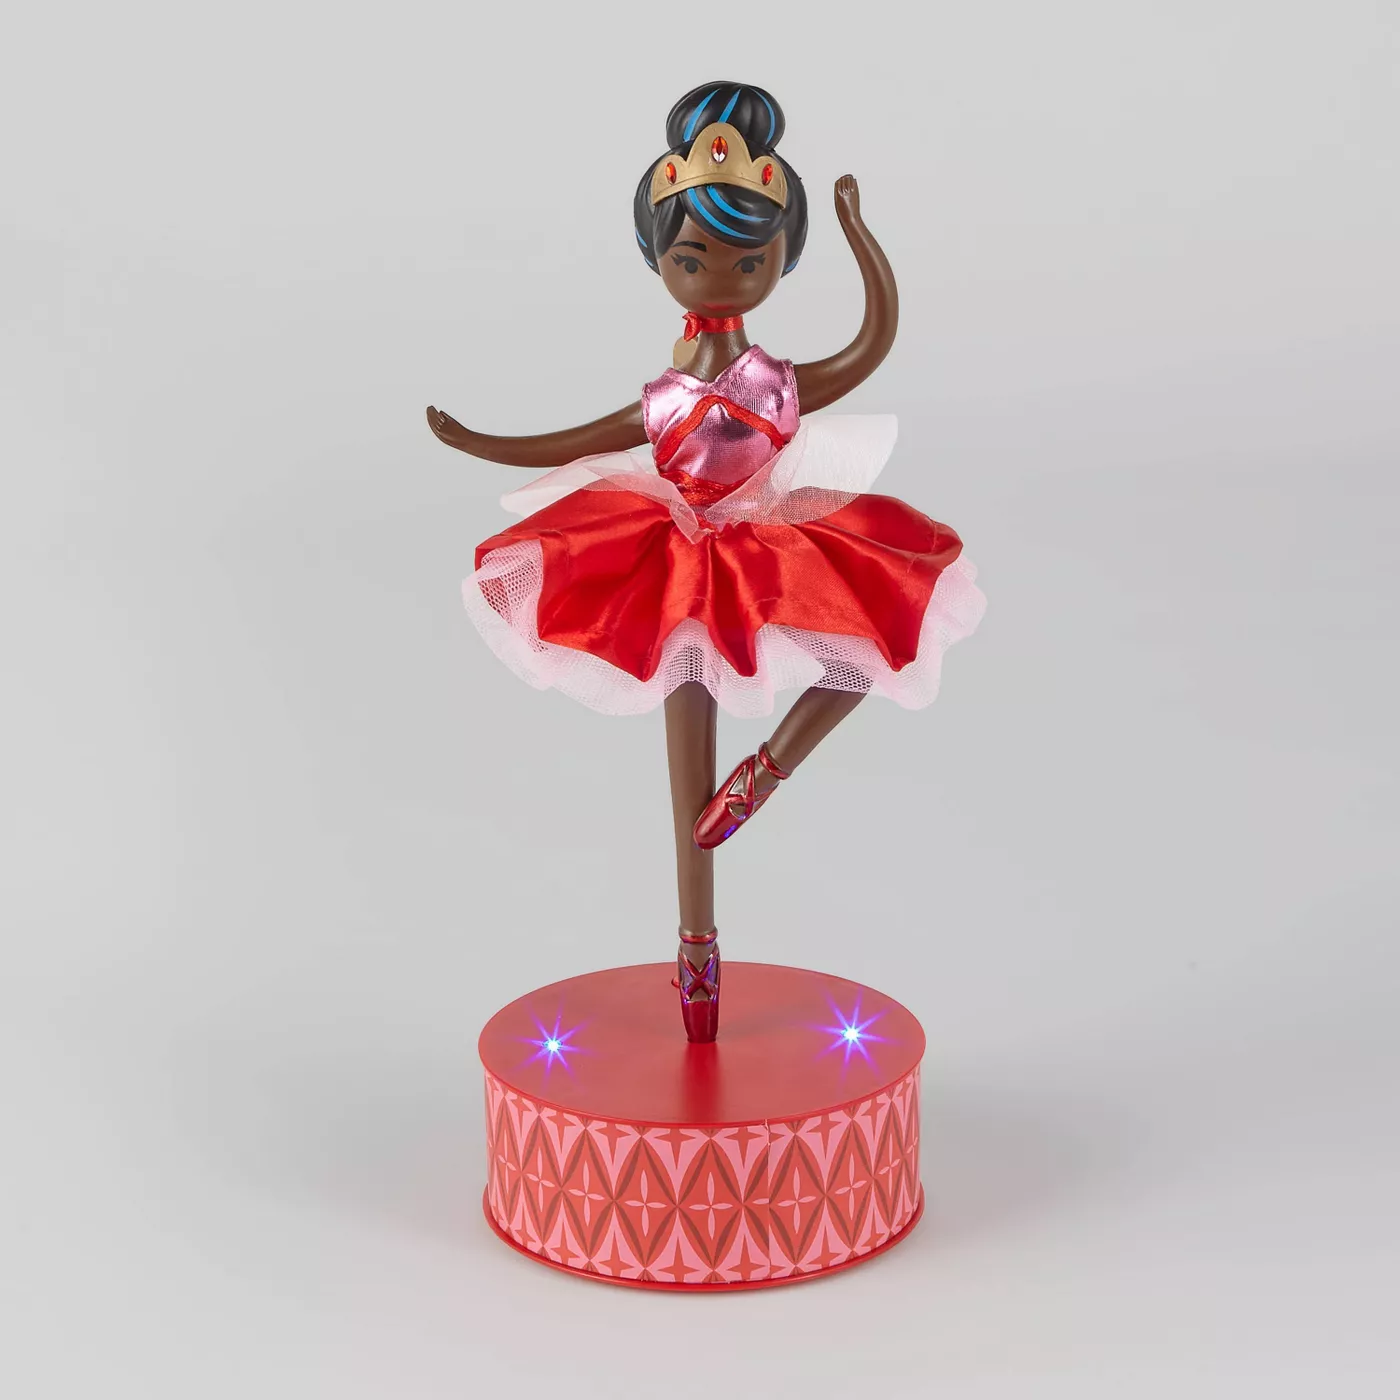 Figura decorativa de bailarina animada - Wondershop ™ | Mercandu